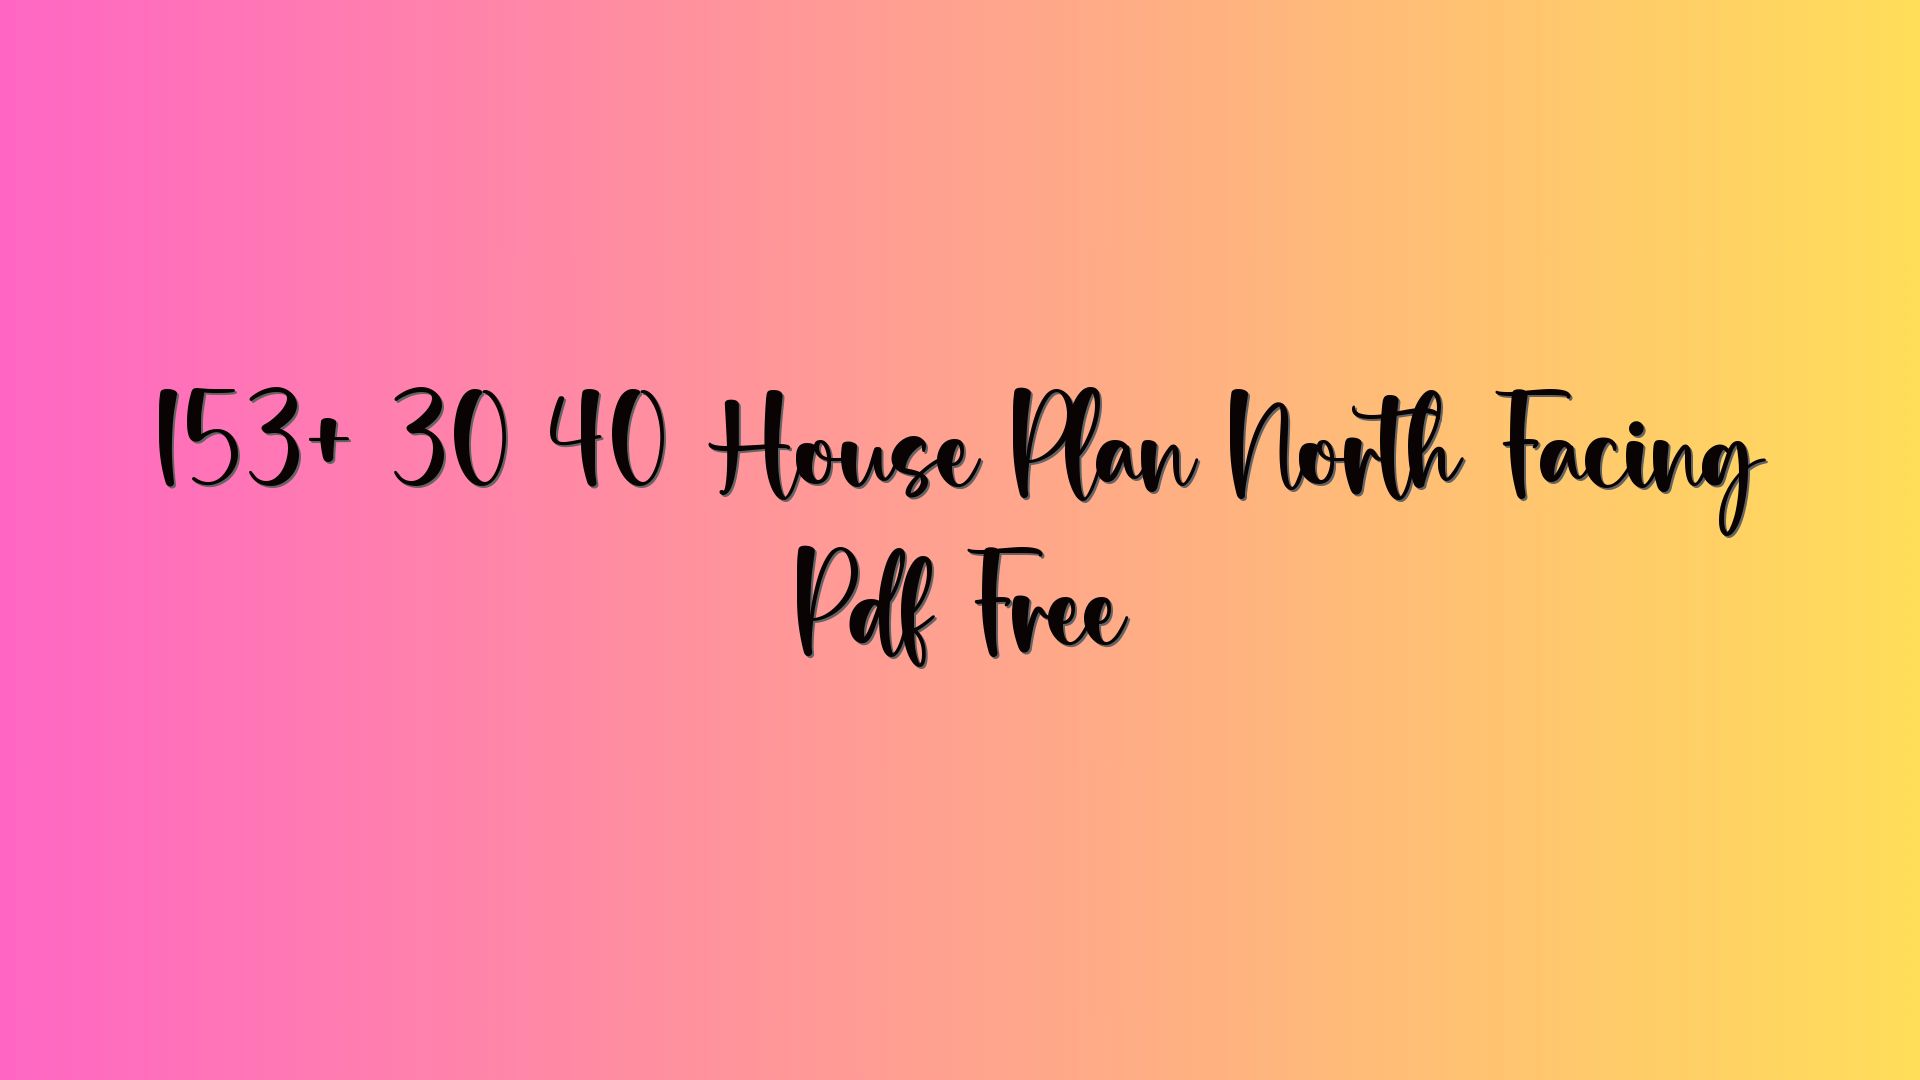 153+ 30 40 House Plan North Facing Pdf Free